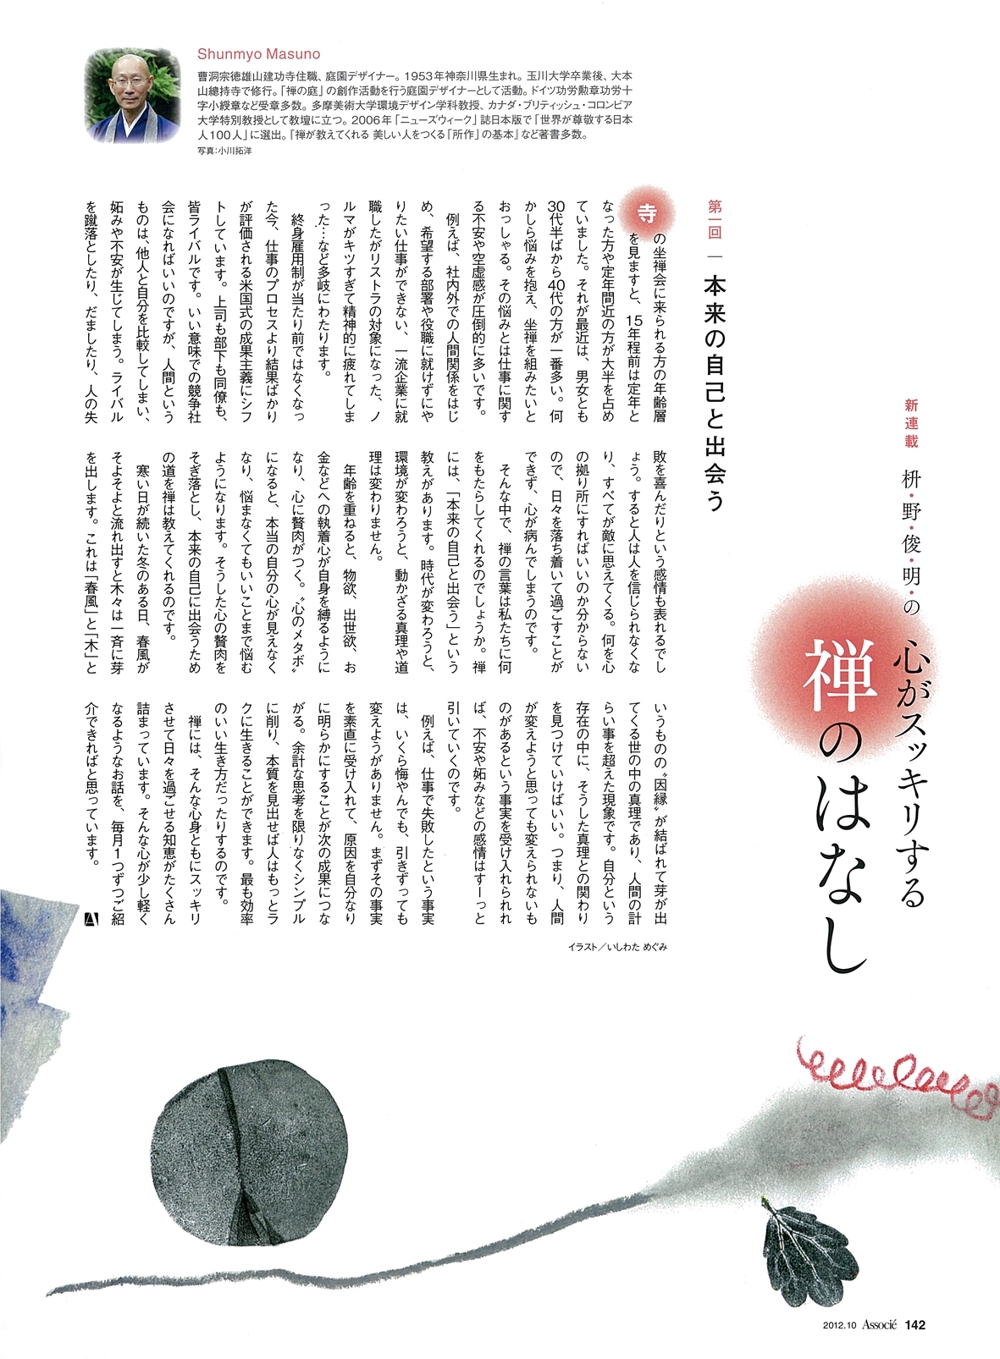 雑誌「日経ビジネスAssocie」禅のお話の挿絵